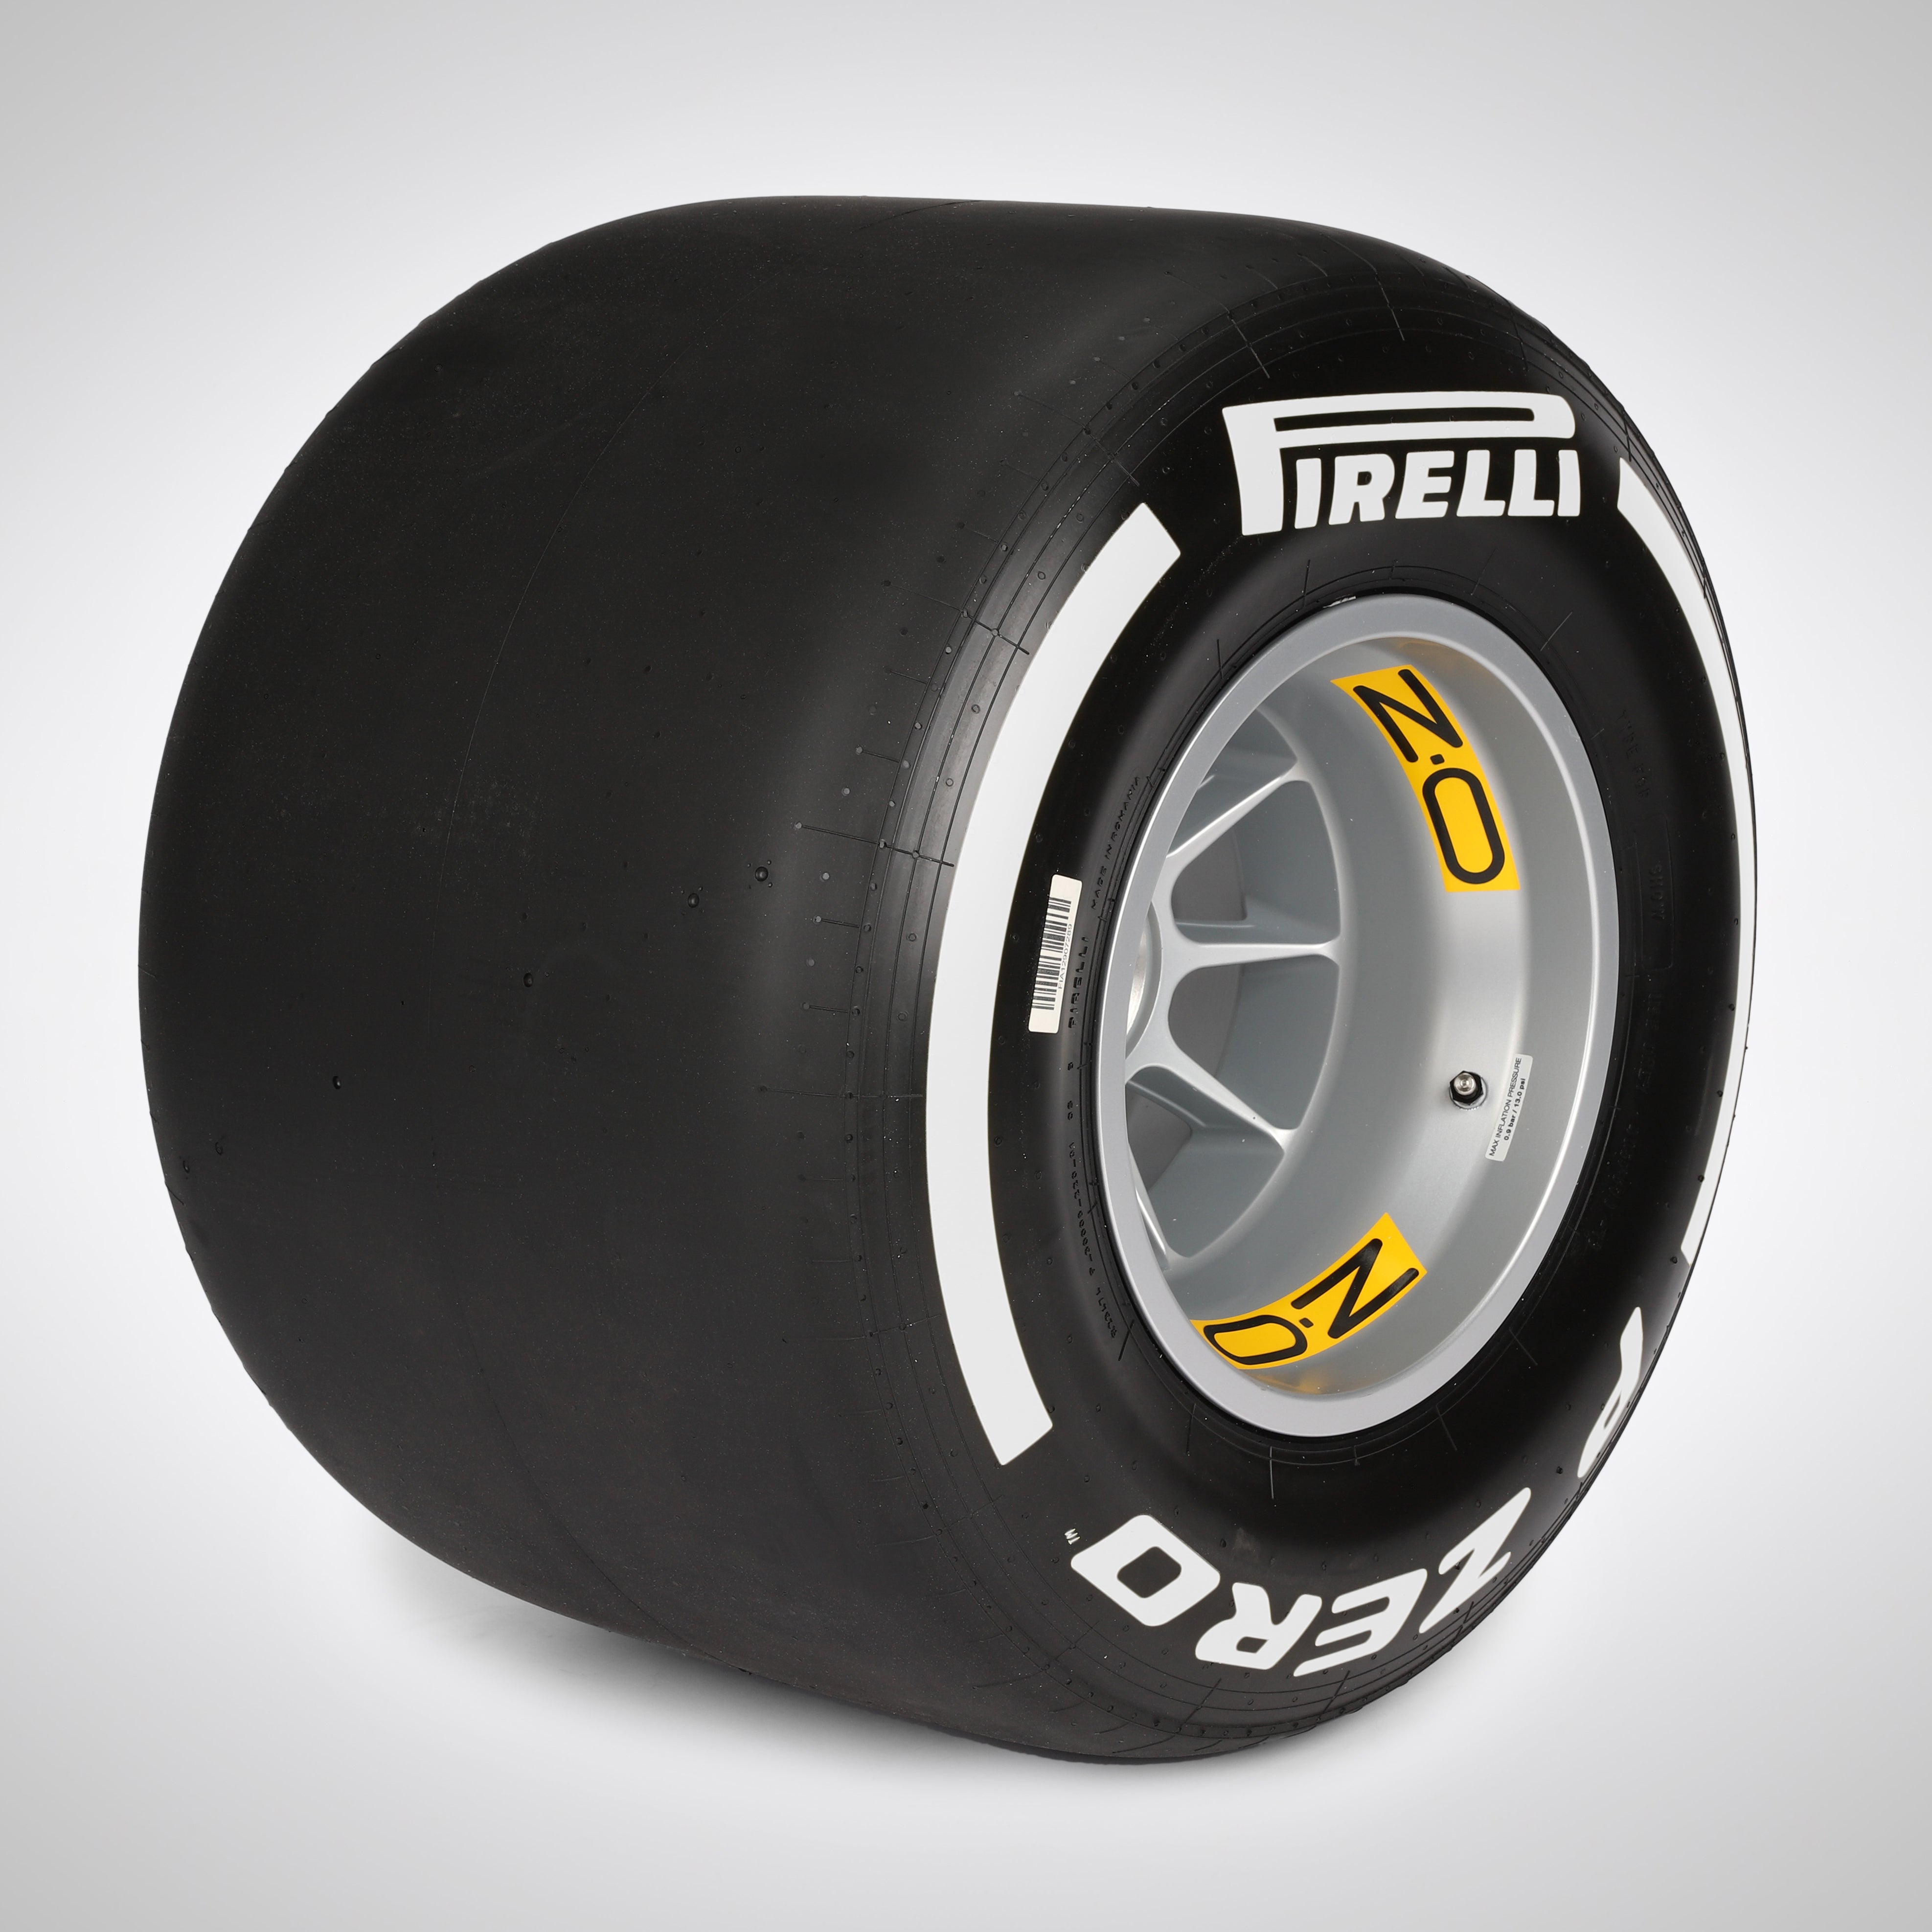 Pirelli 2018 Wheel Rim & Tyre Table - White Medium Compound